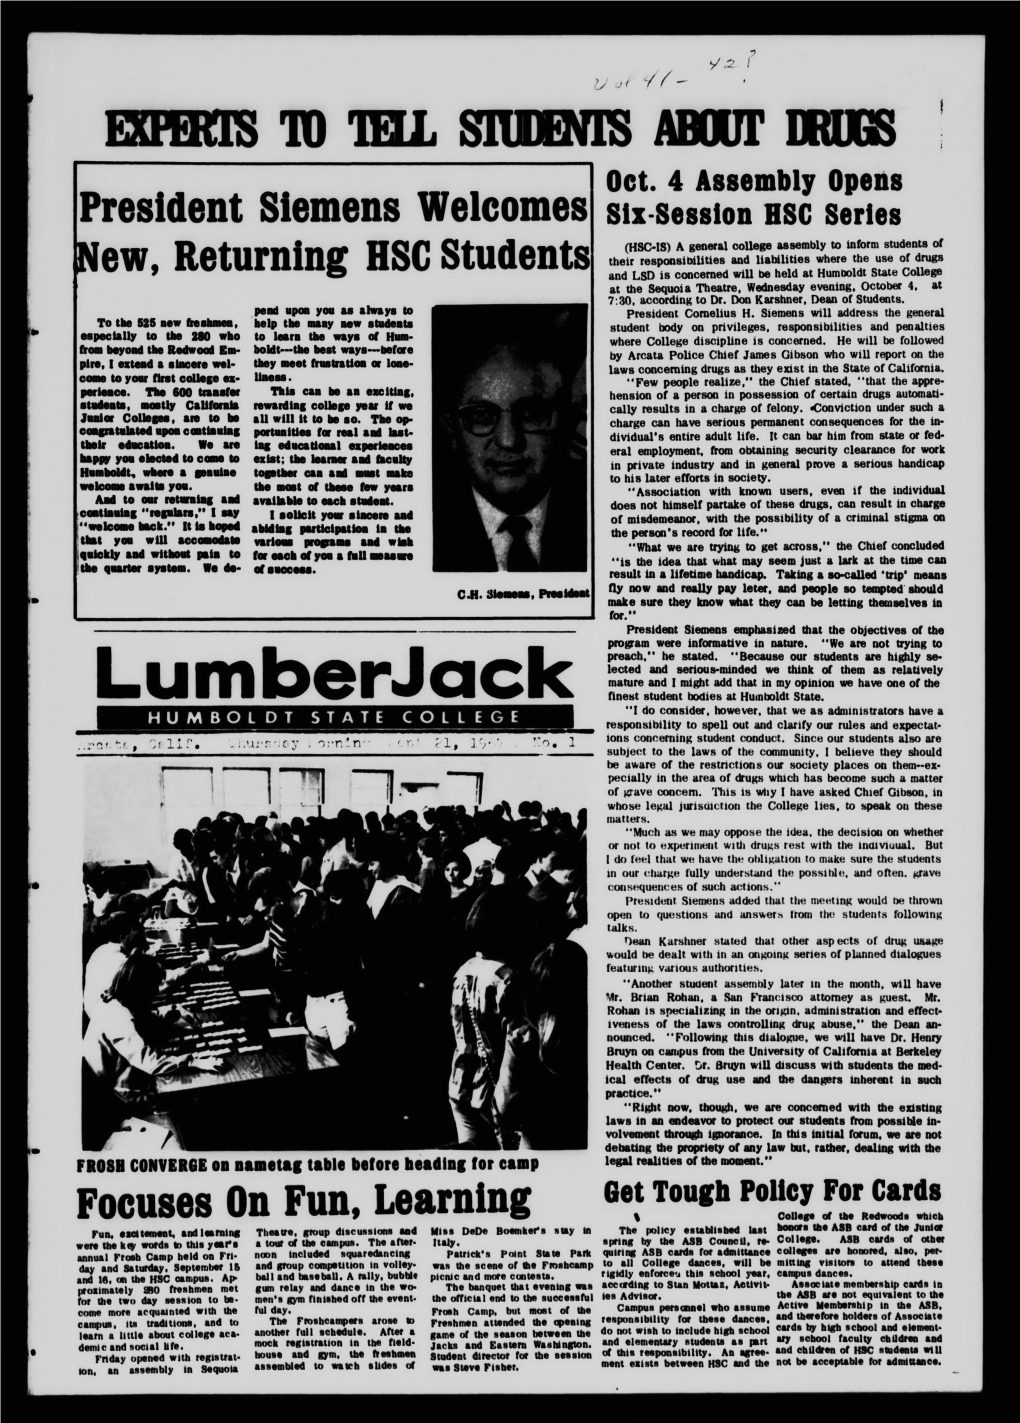 The Lumberjack, September 21, 1967